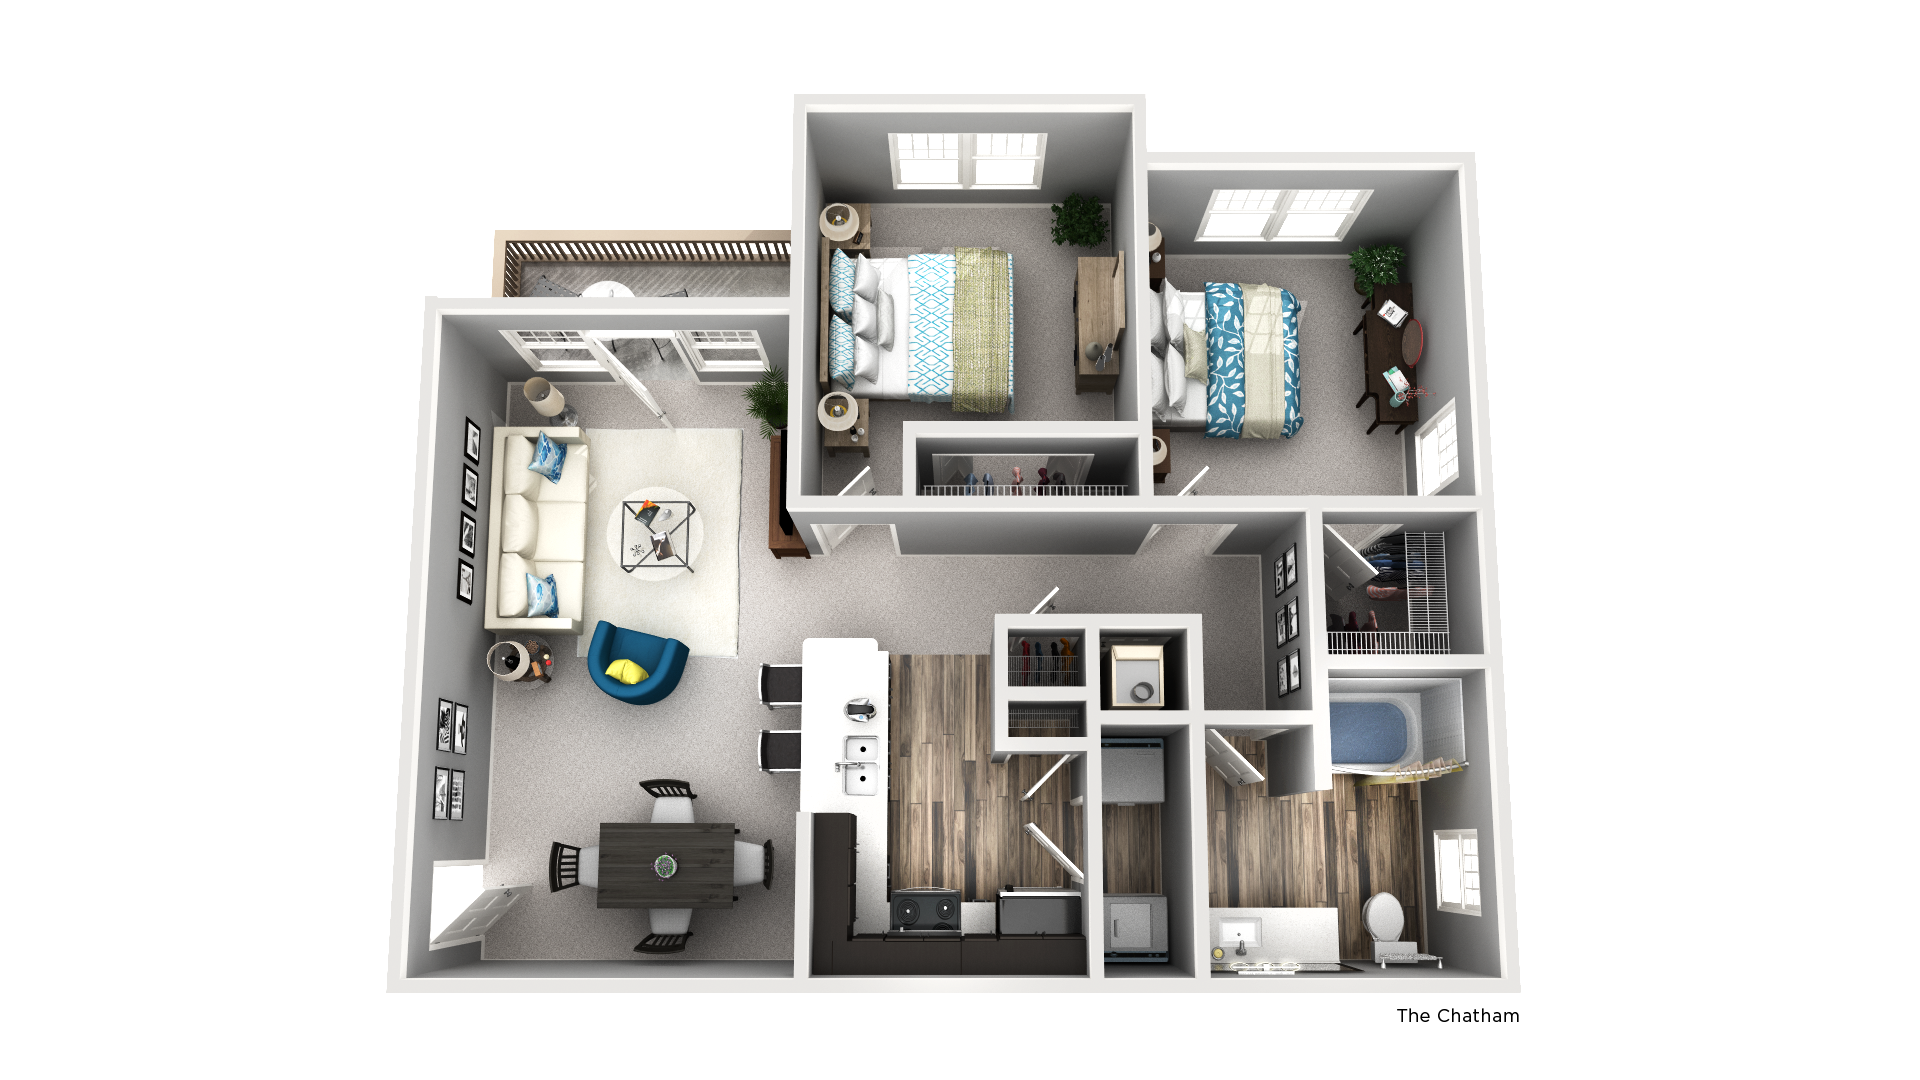 Apartment, 1 bedroom, 1 bath, 1 den, 940 square feet